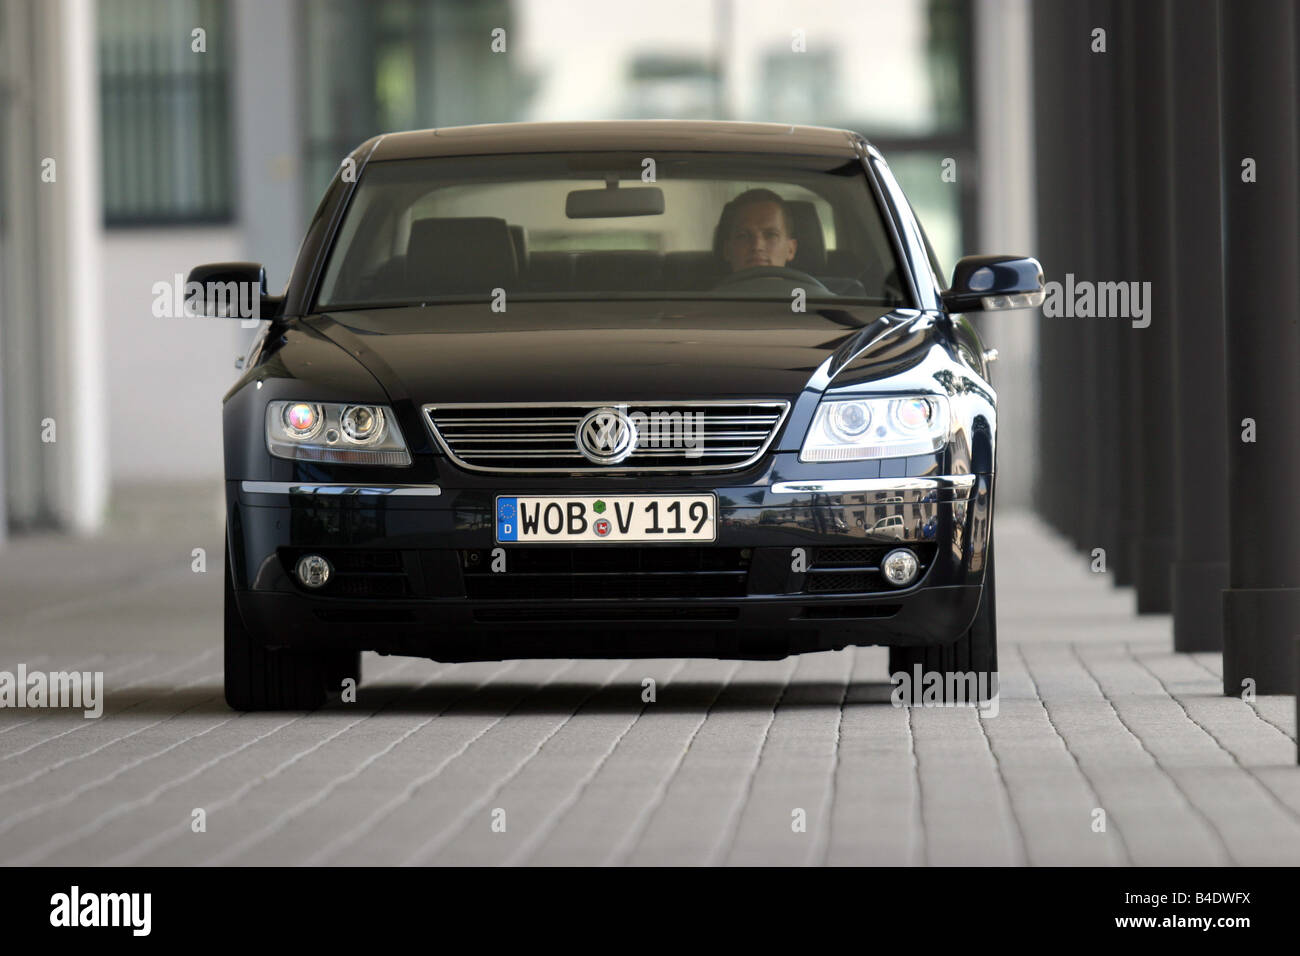 Voiture, VW Volkswagen Phaeton V10 TDI, Limousine, Bateau environ s, l'année de modèle 2002-, noir, conduite, Ville, vue avant Banque D'Images